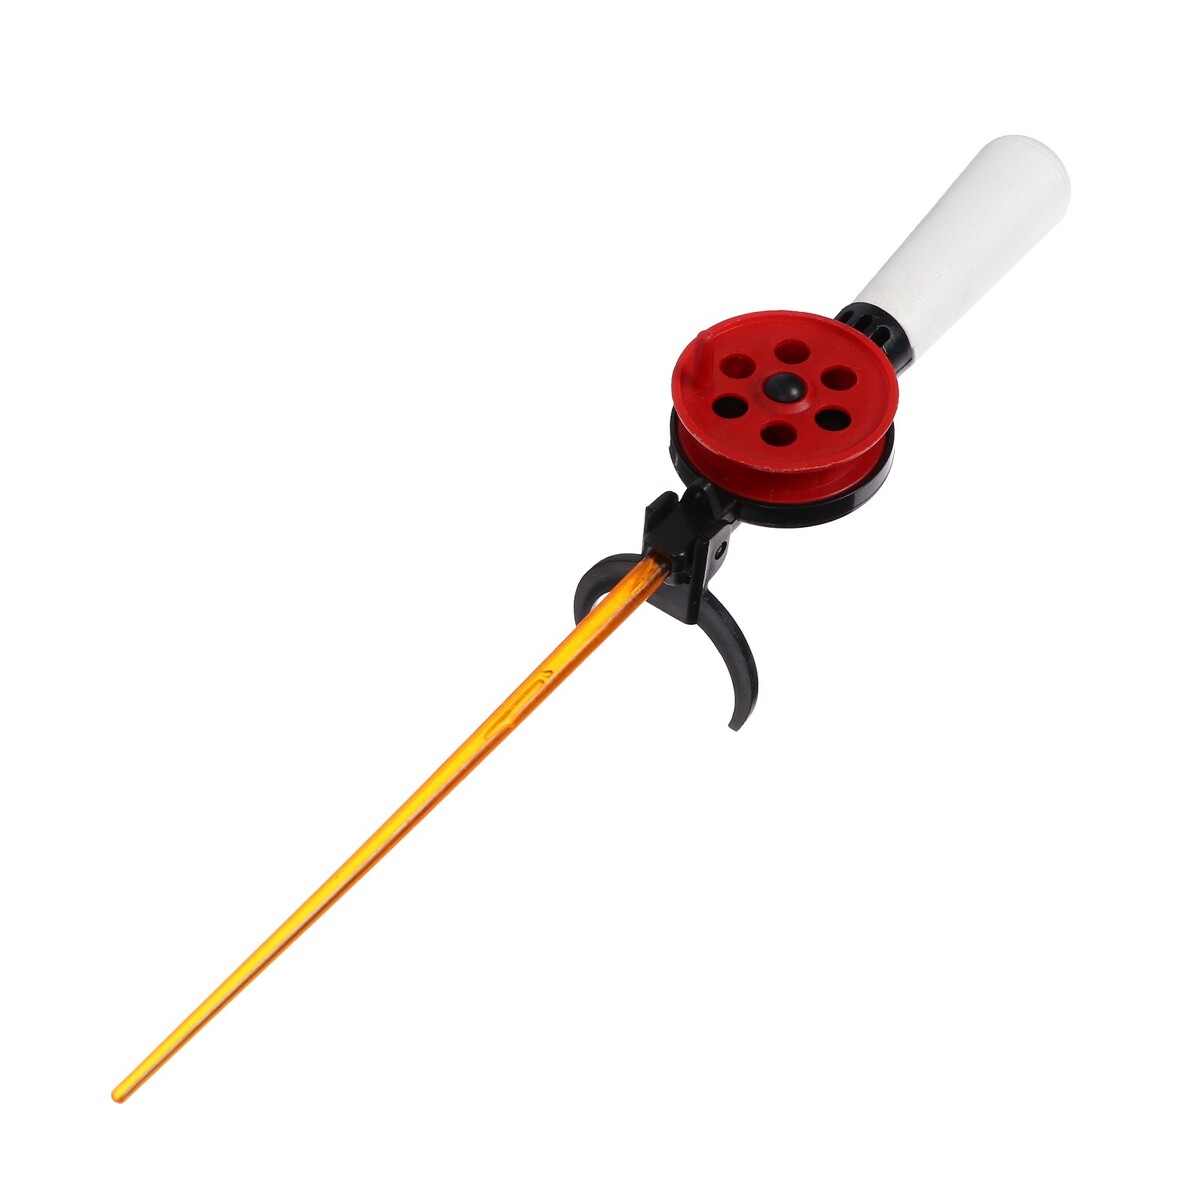 Удочка зимняя, ручка пенопласт длиной 70 мм, hfb-9b удочка зимняя ручка неопрен длина 42 см красный hbf 34 1